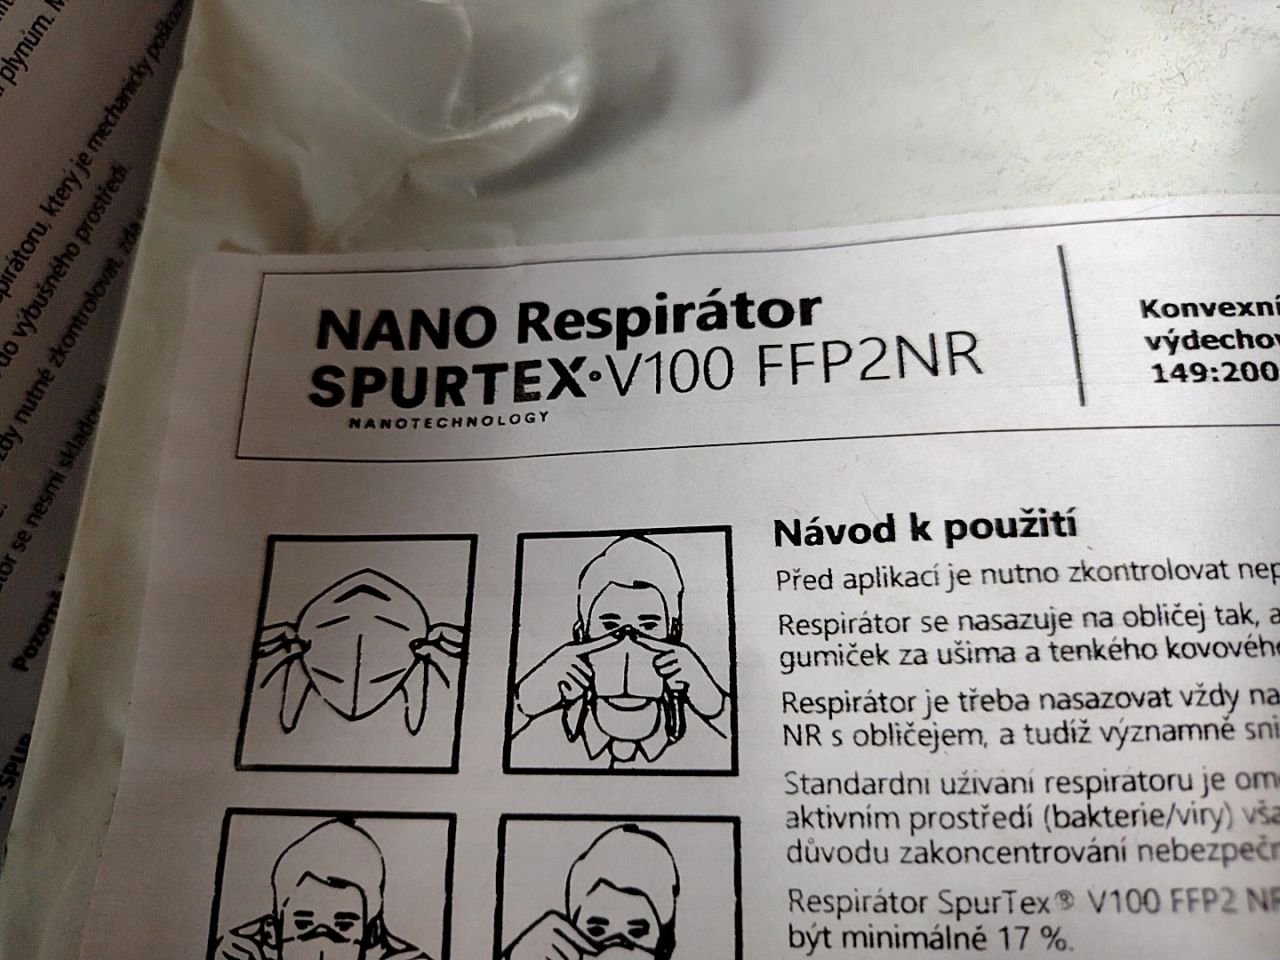 Nano respirátory Spurtex